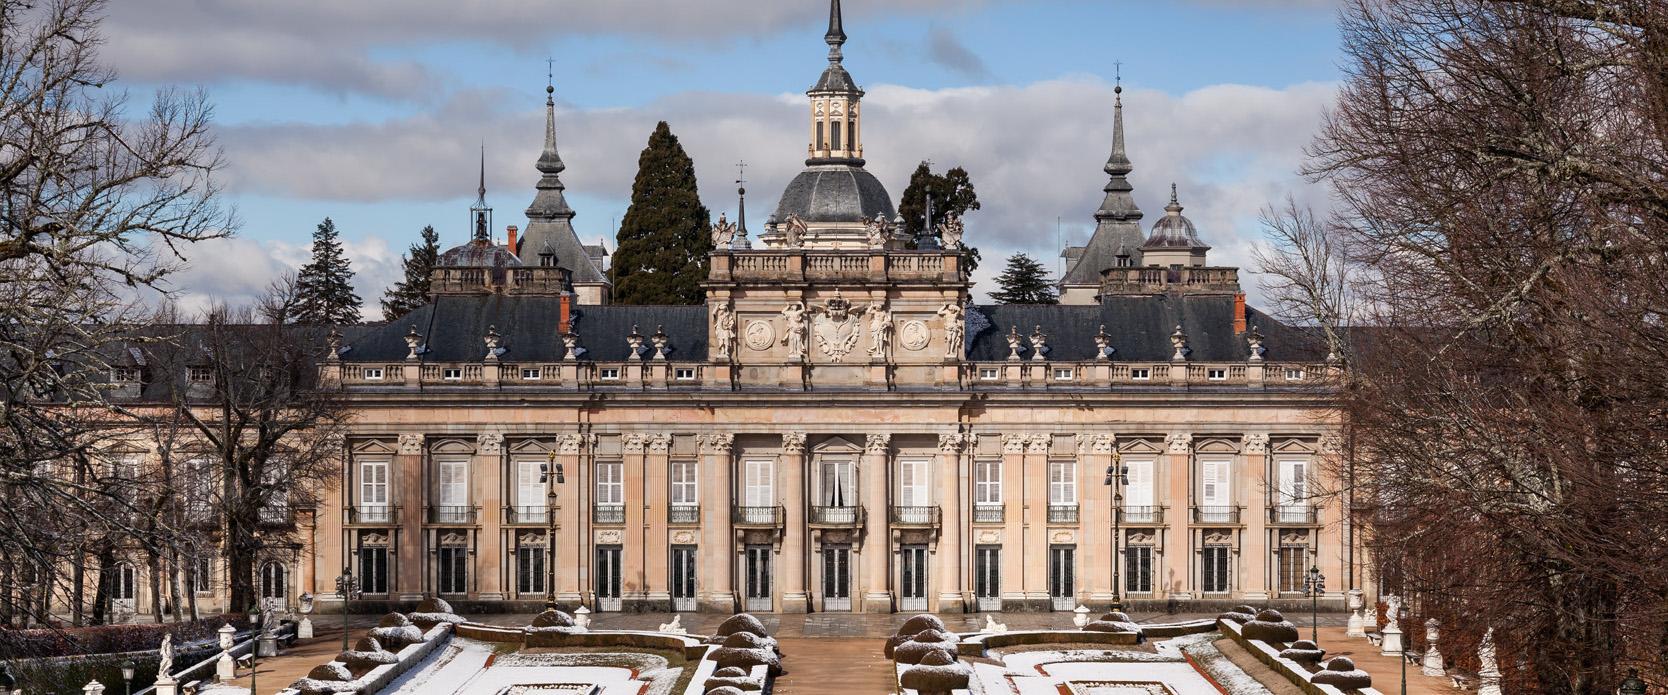 Entrada + Visita Guiada Palacio Real de La Granja